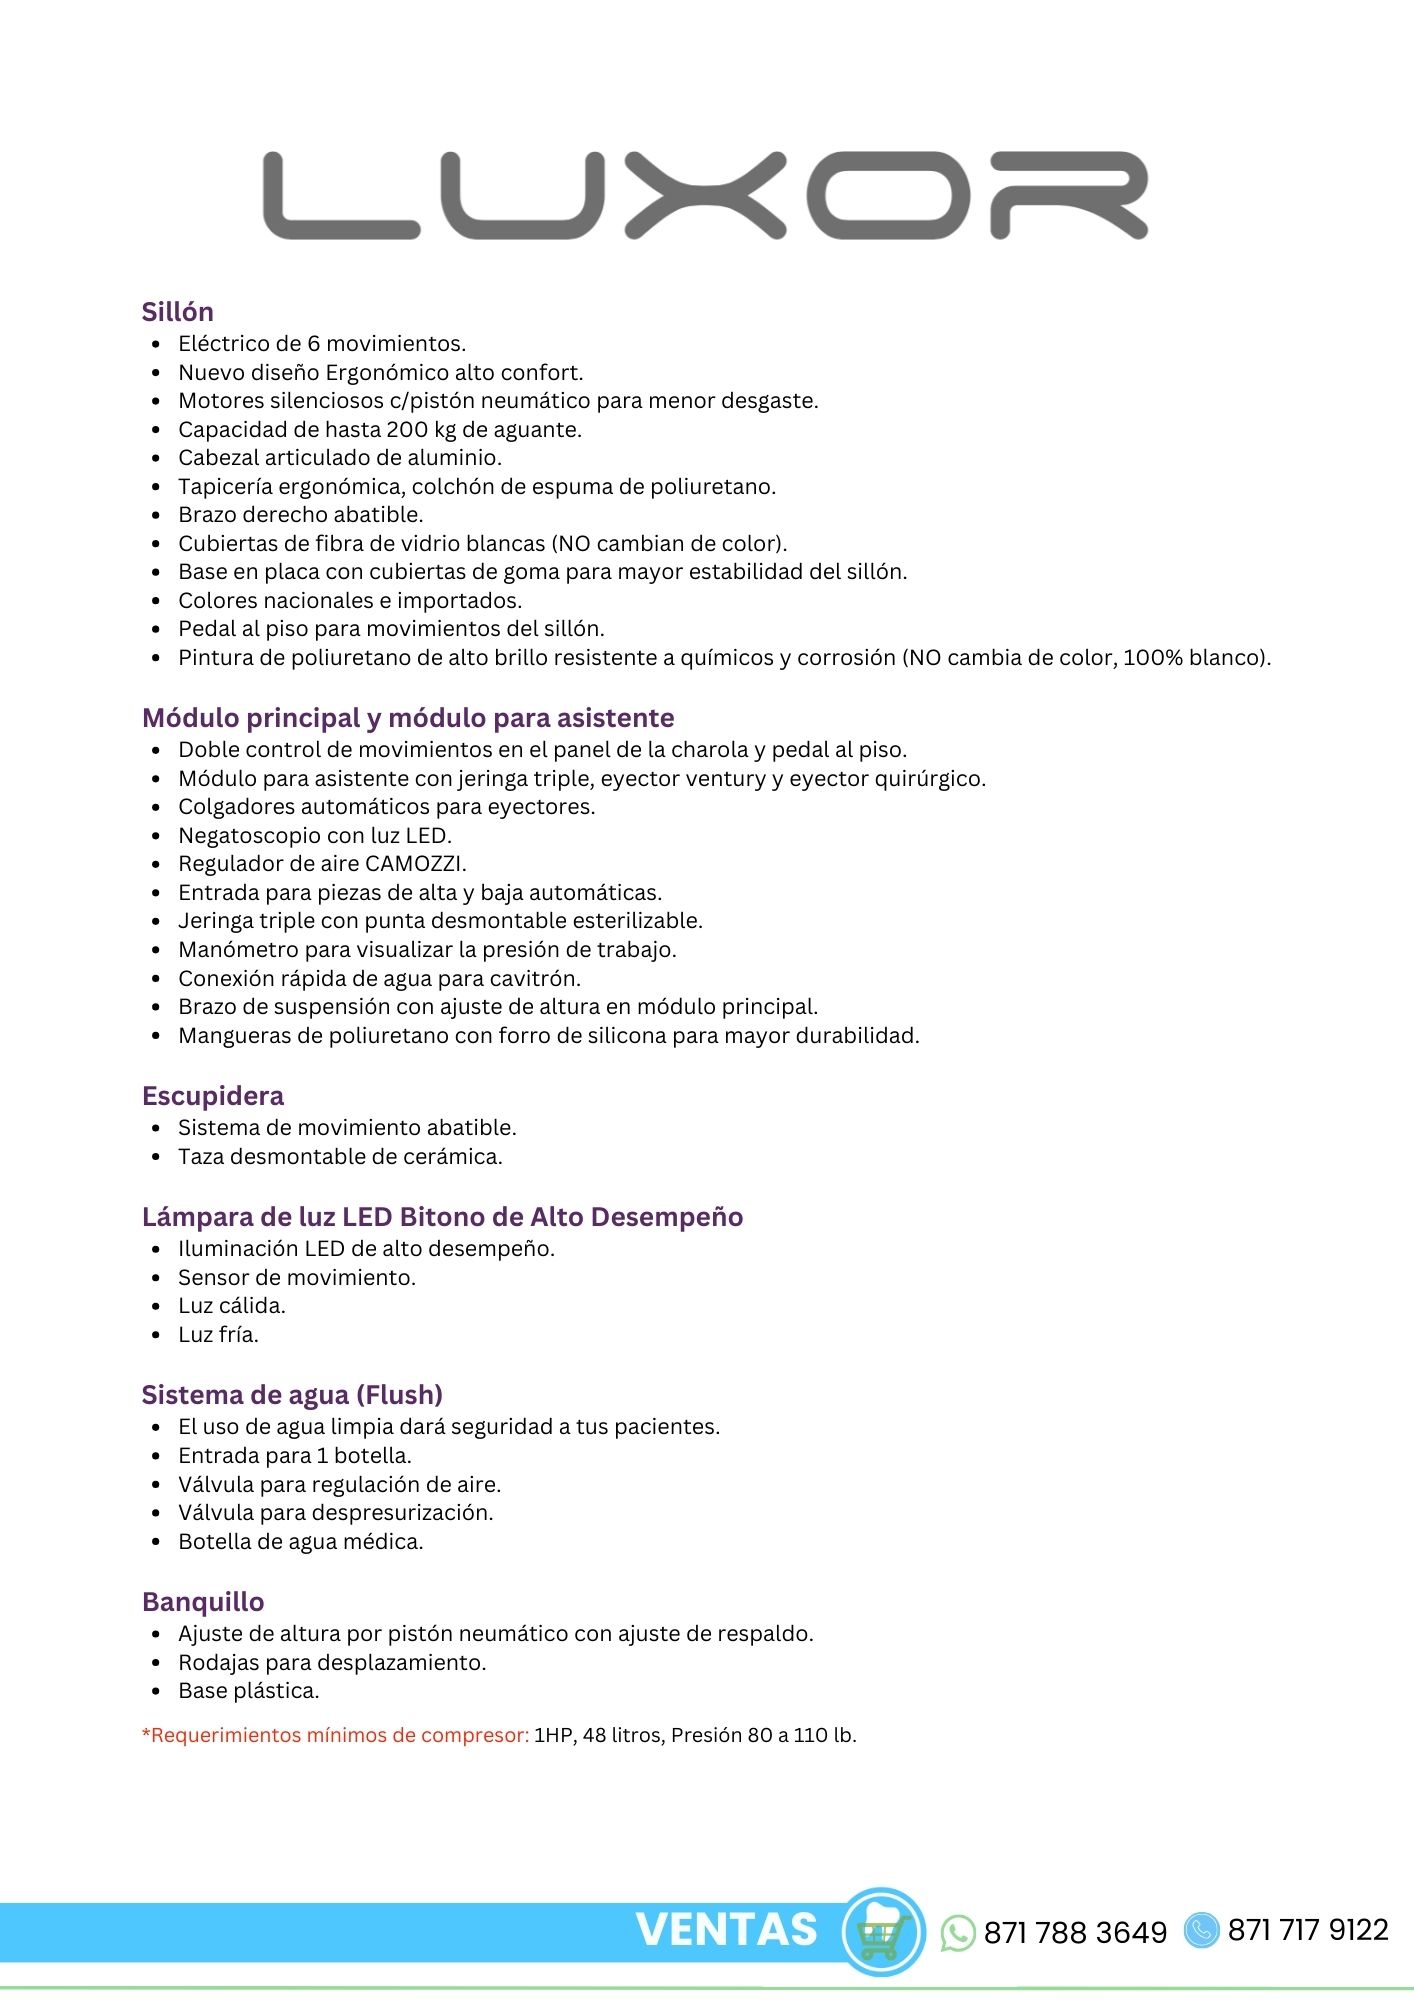 Catálogo Unidad Dental Peymar Luxor Especificaciones y Características Orthosign